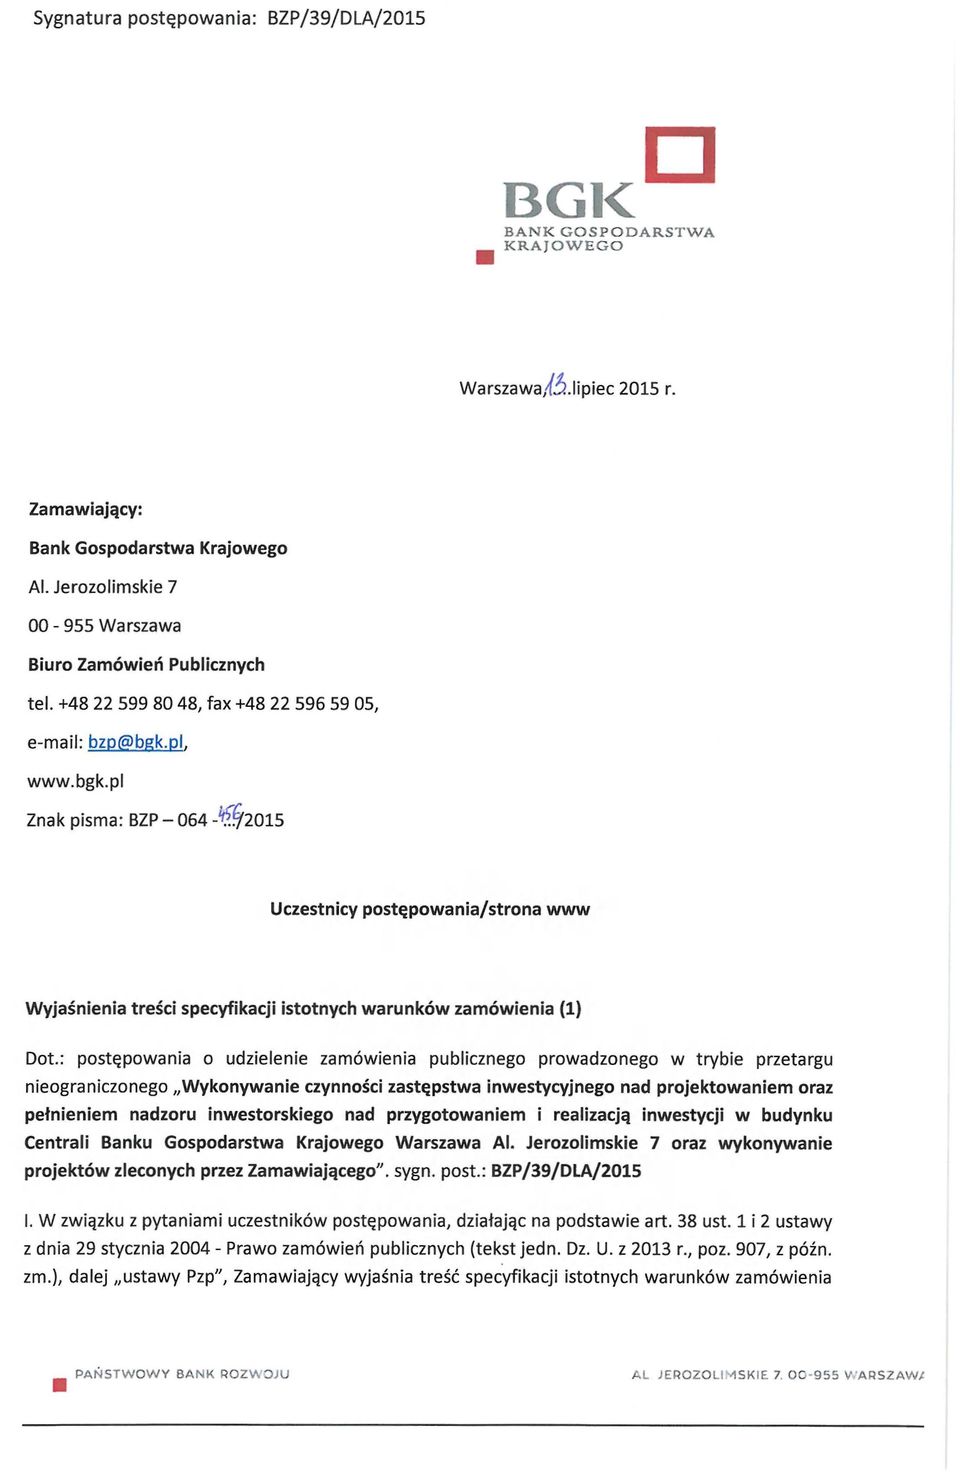 pl. www.bgk.pl Znak pisma: BZP-064 -'^f/2015 Uczestnicy postępowania/strona www Wyjaśnienia treści specyfikacji istotnych warunków zamówienia (1) Dot.